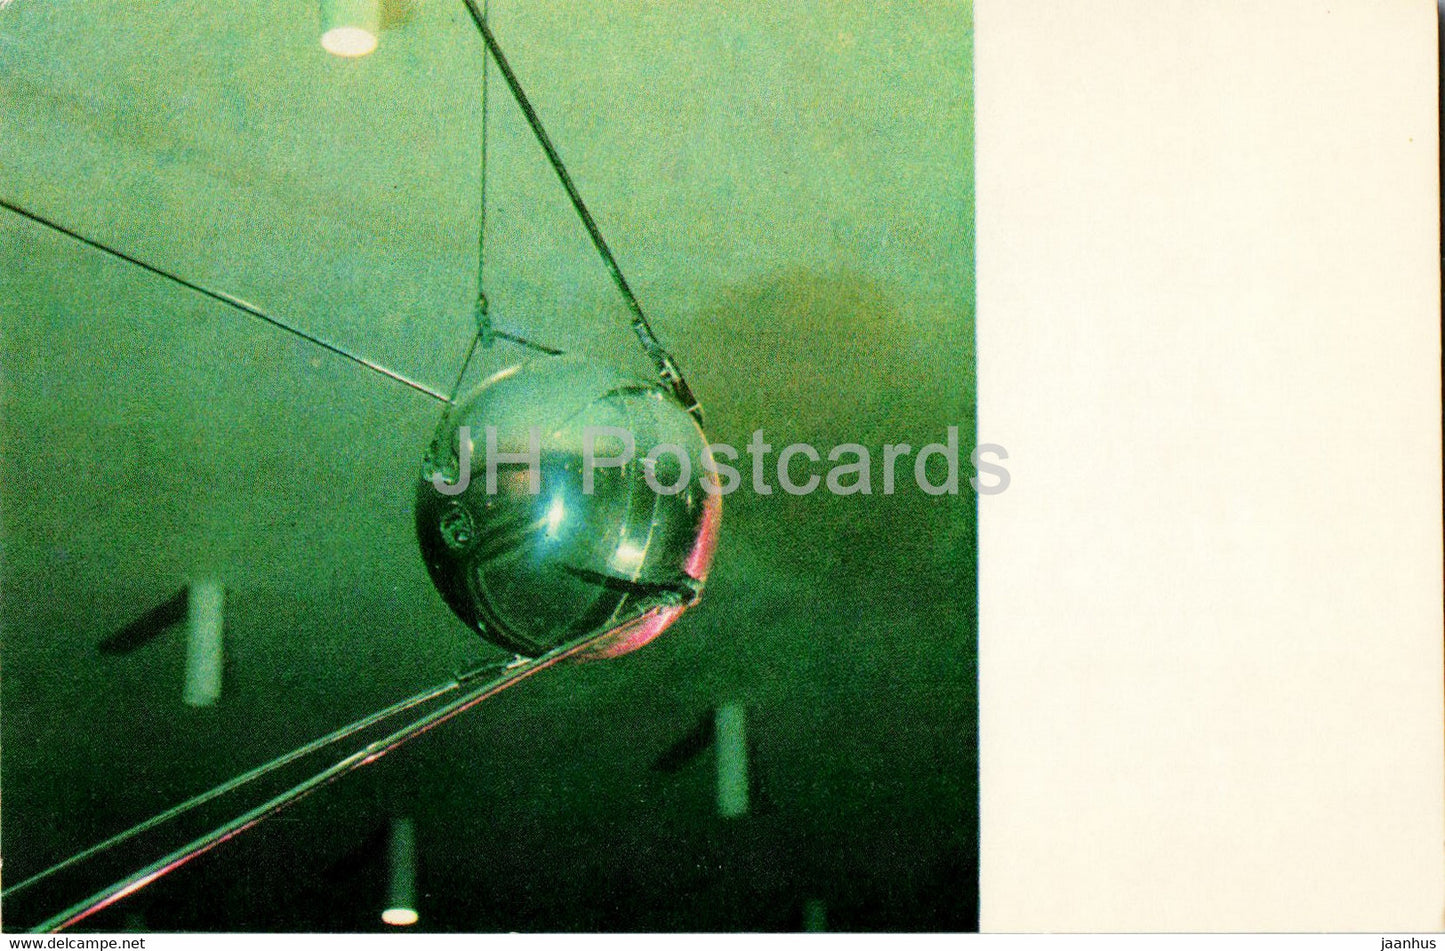 Kaluga - Tsiolkovsky State Museum of Cosmonautics - Soviet Sputnik - 1971 - Russia USSR - unused - JH Postcards